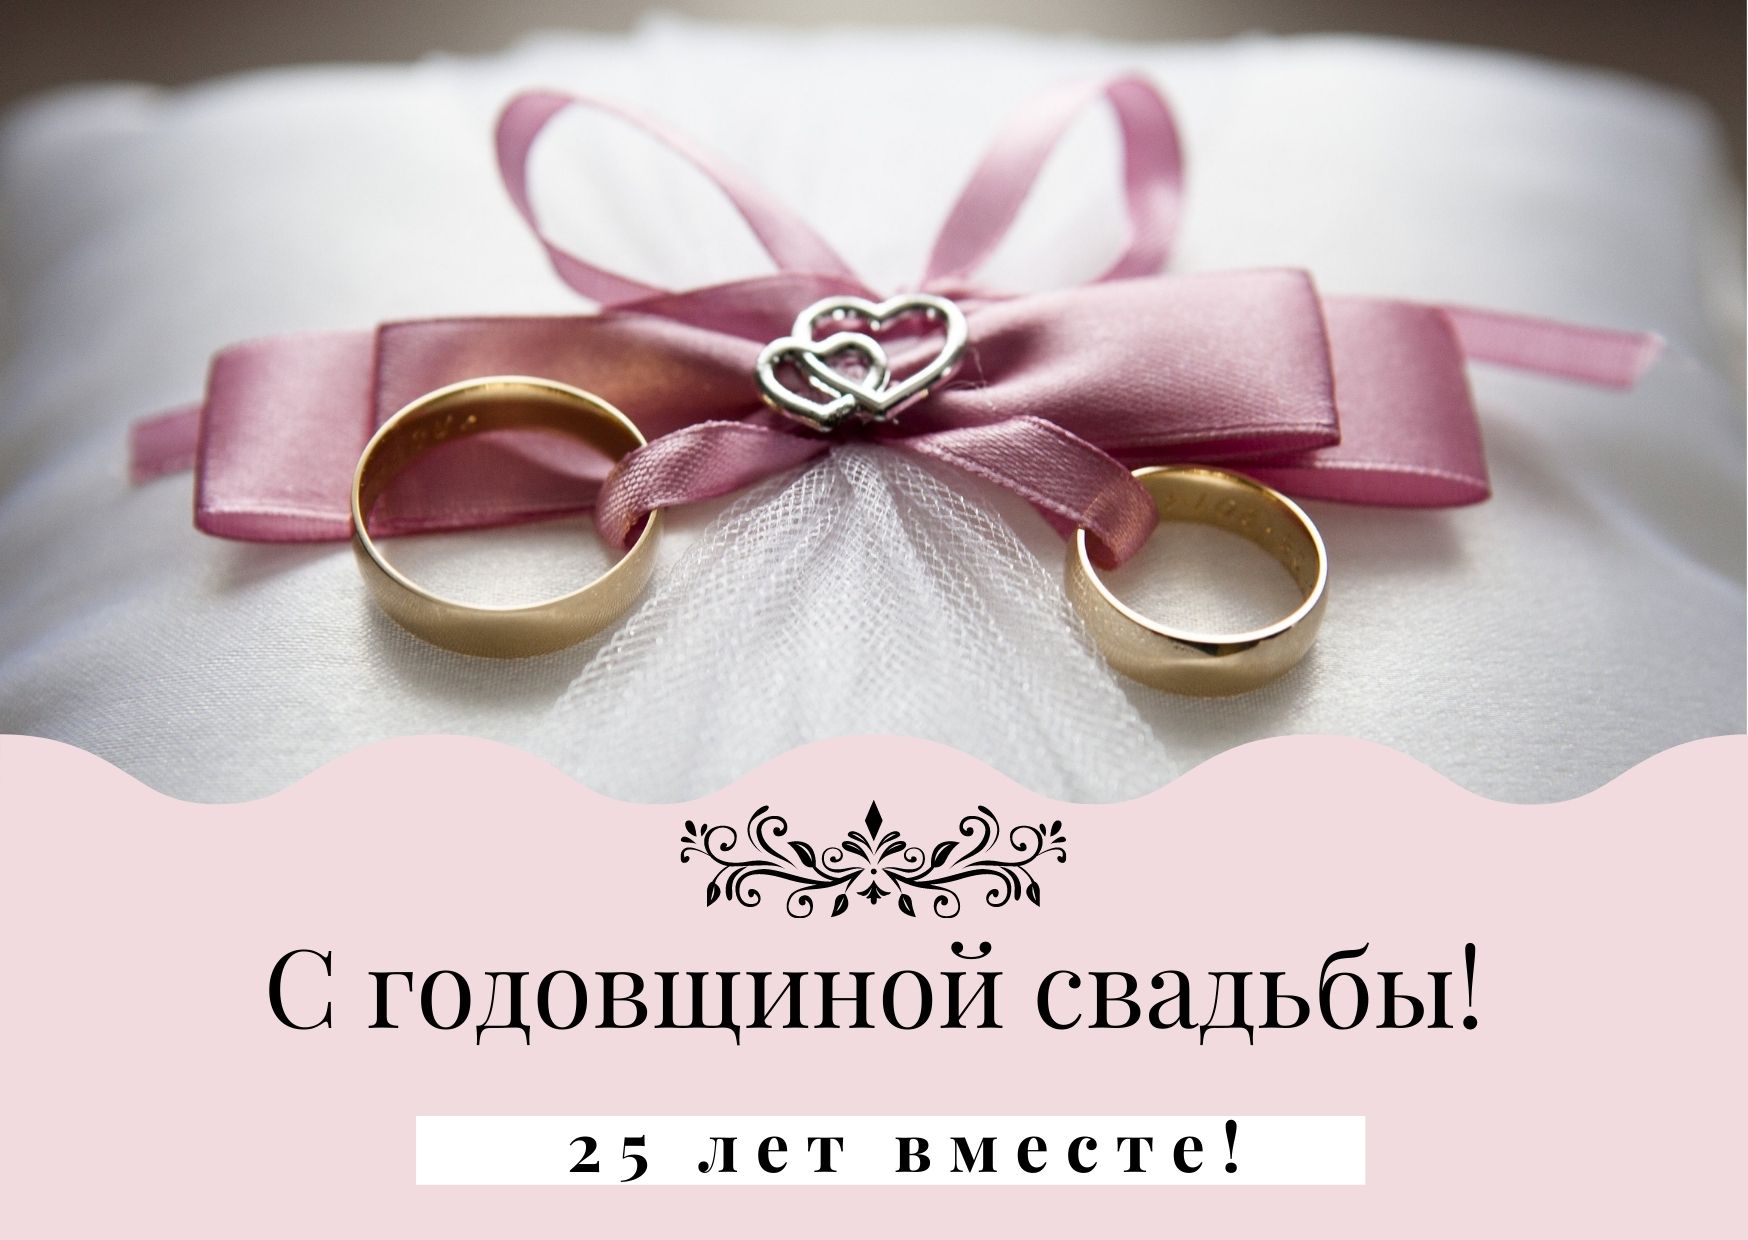 Подарки серебряную свадьбу (25 лет)